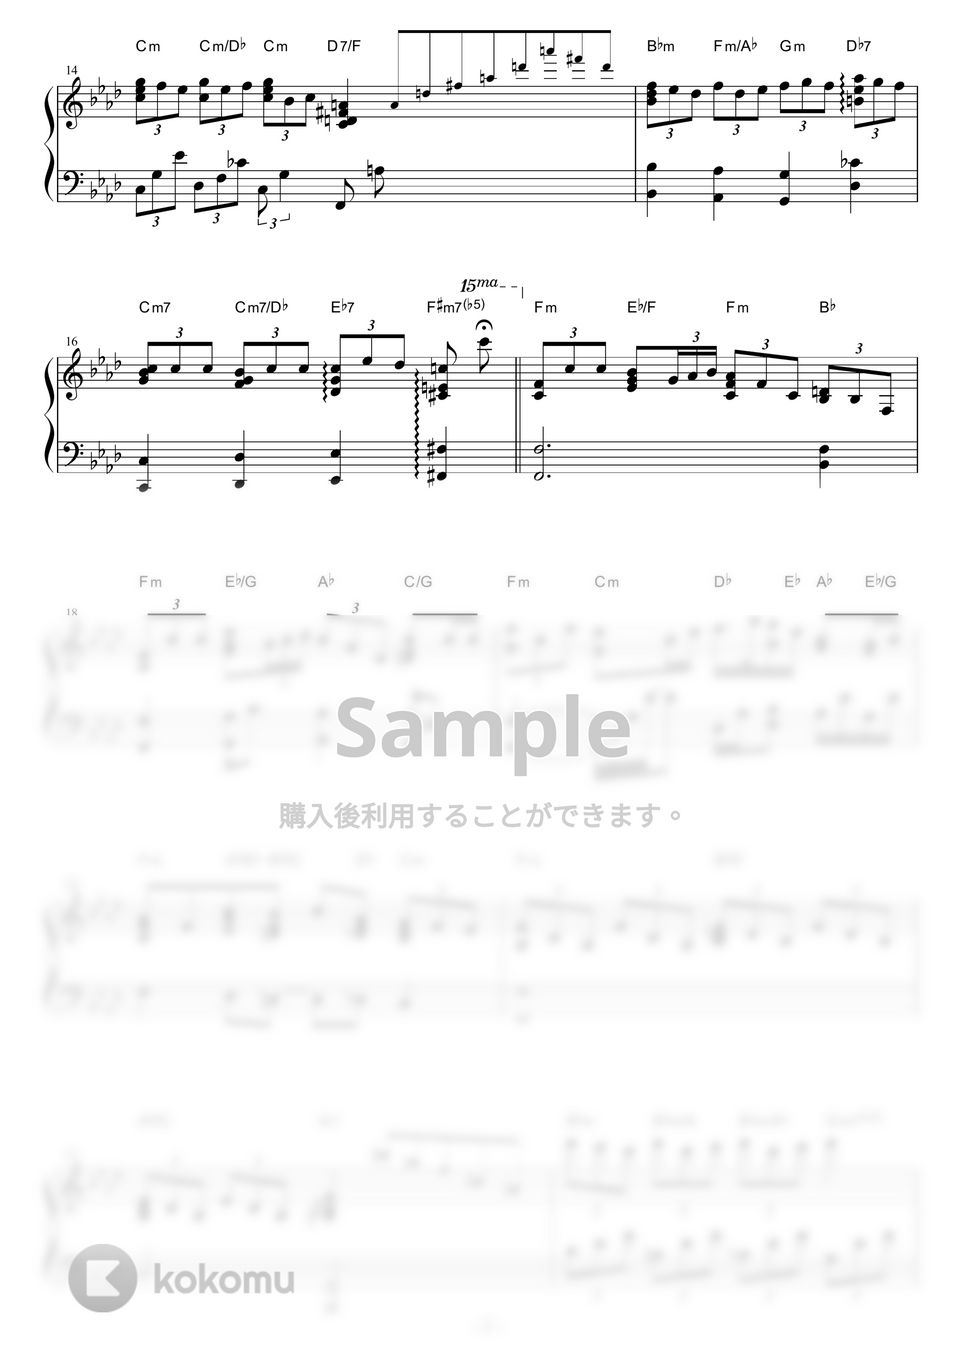 ルパン三世 - 炎のたからもの (Jazz ver.) by piano*score